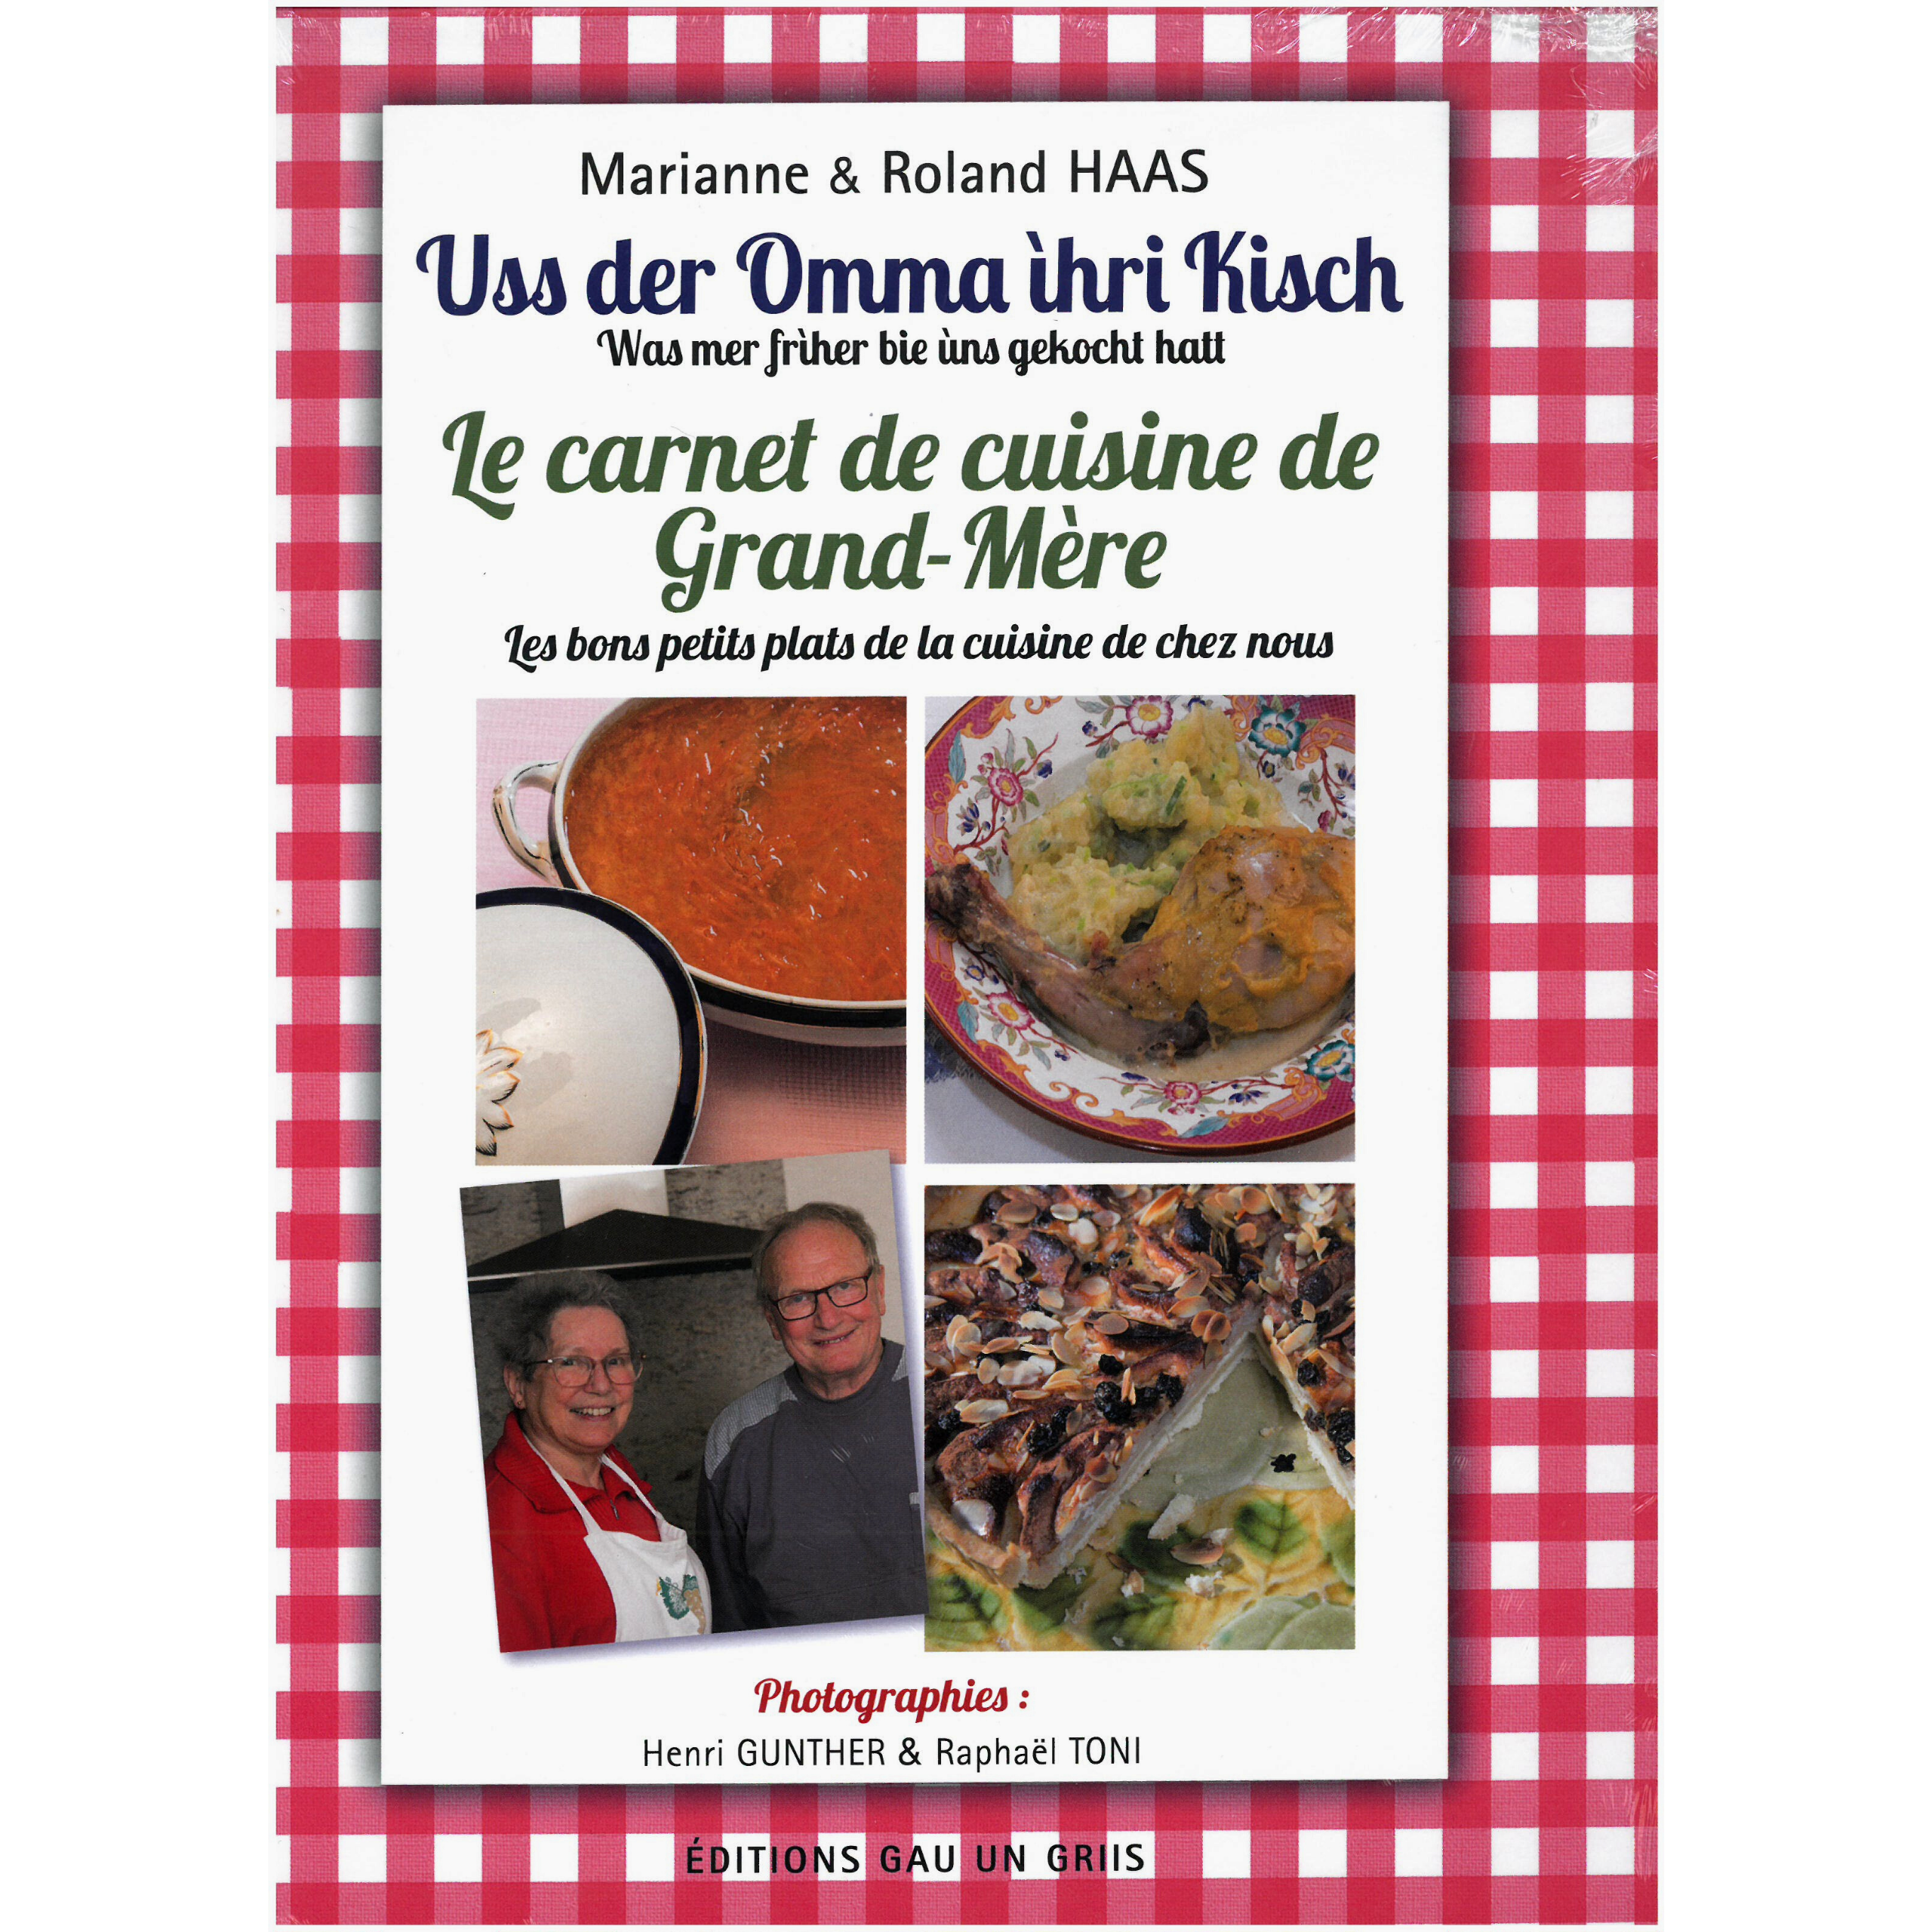 Le carnet de cuisine de grand-mère - Office de tourisme de Saint-Avold  Coeur de Moselle